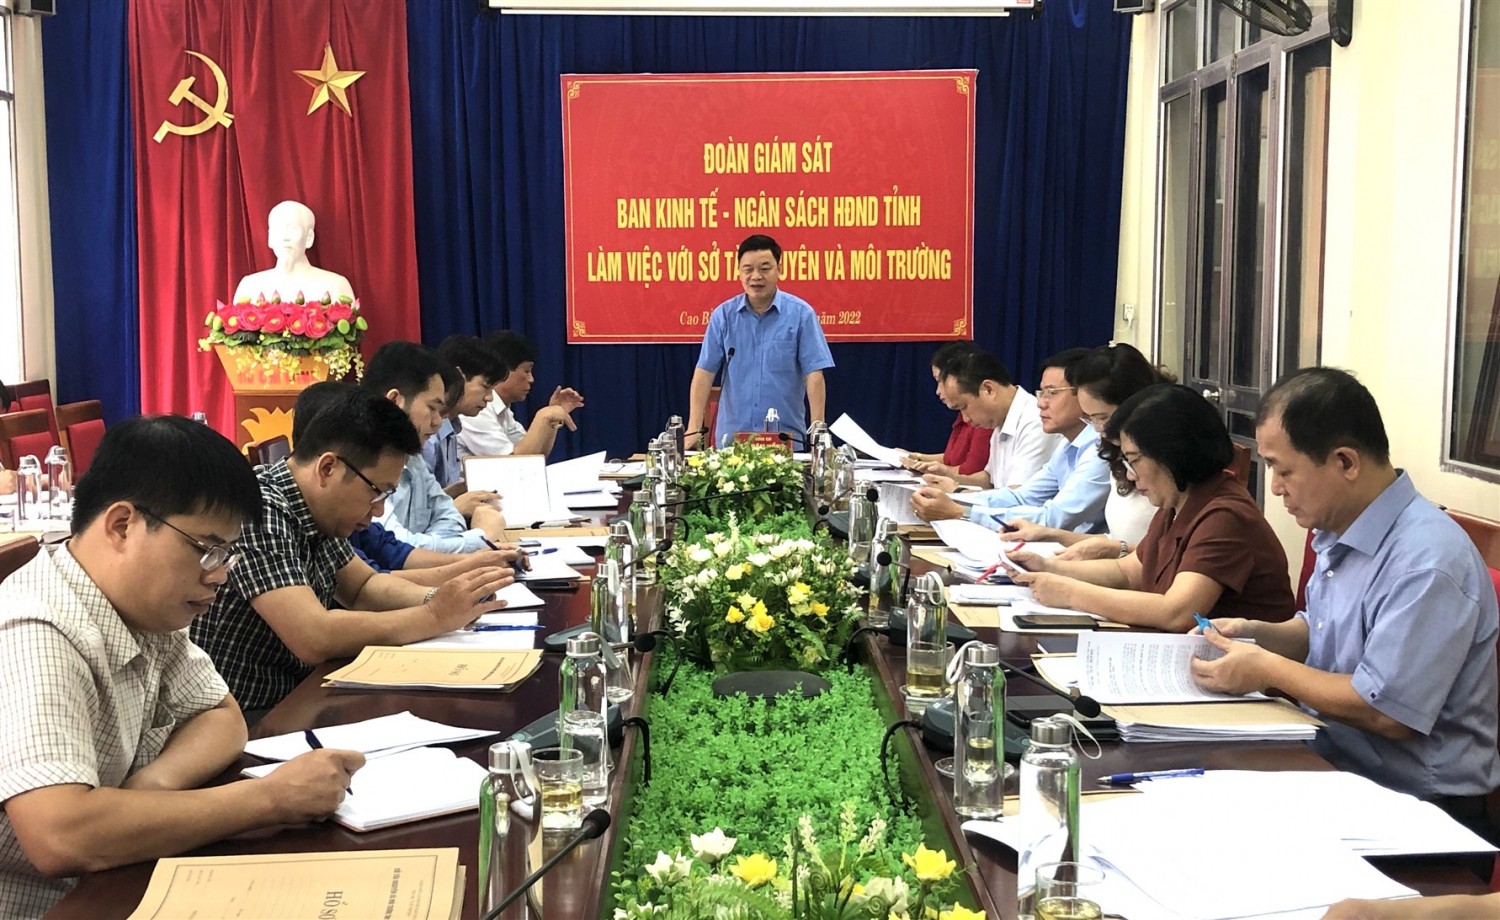 Trưởng Ban Kinh tế - Ngân sách HĐND tỉnh La Văn Hồng phát biểu tại buổi làm việc